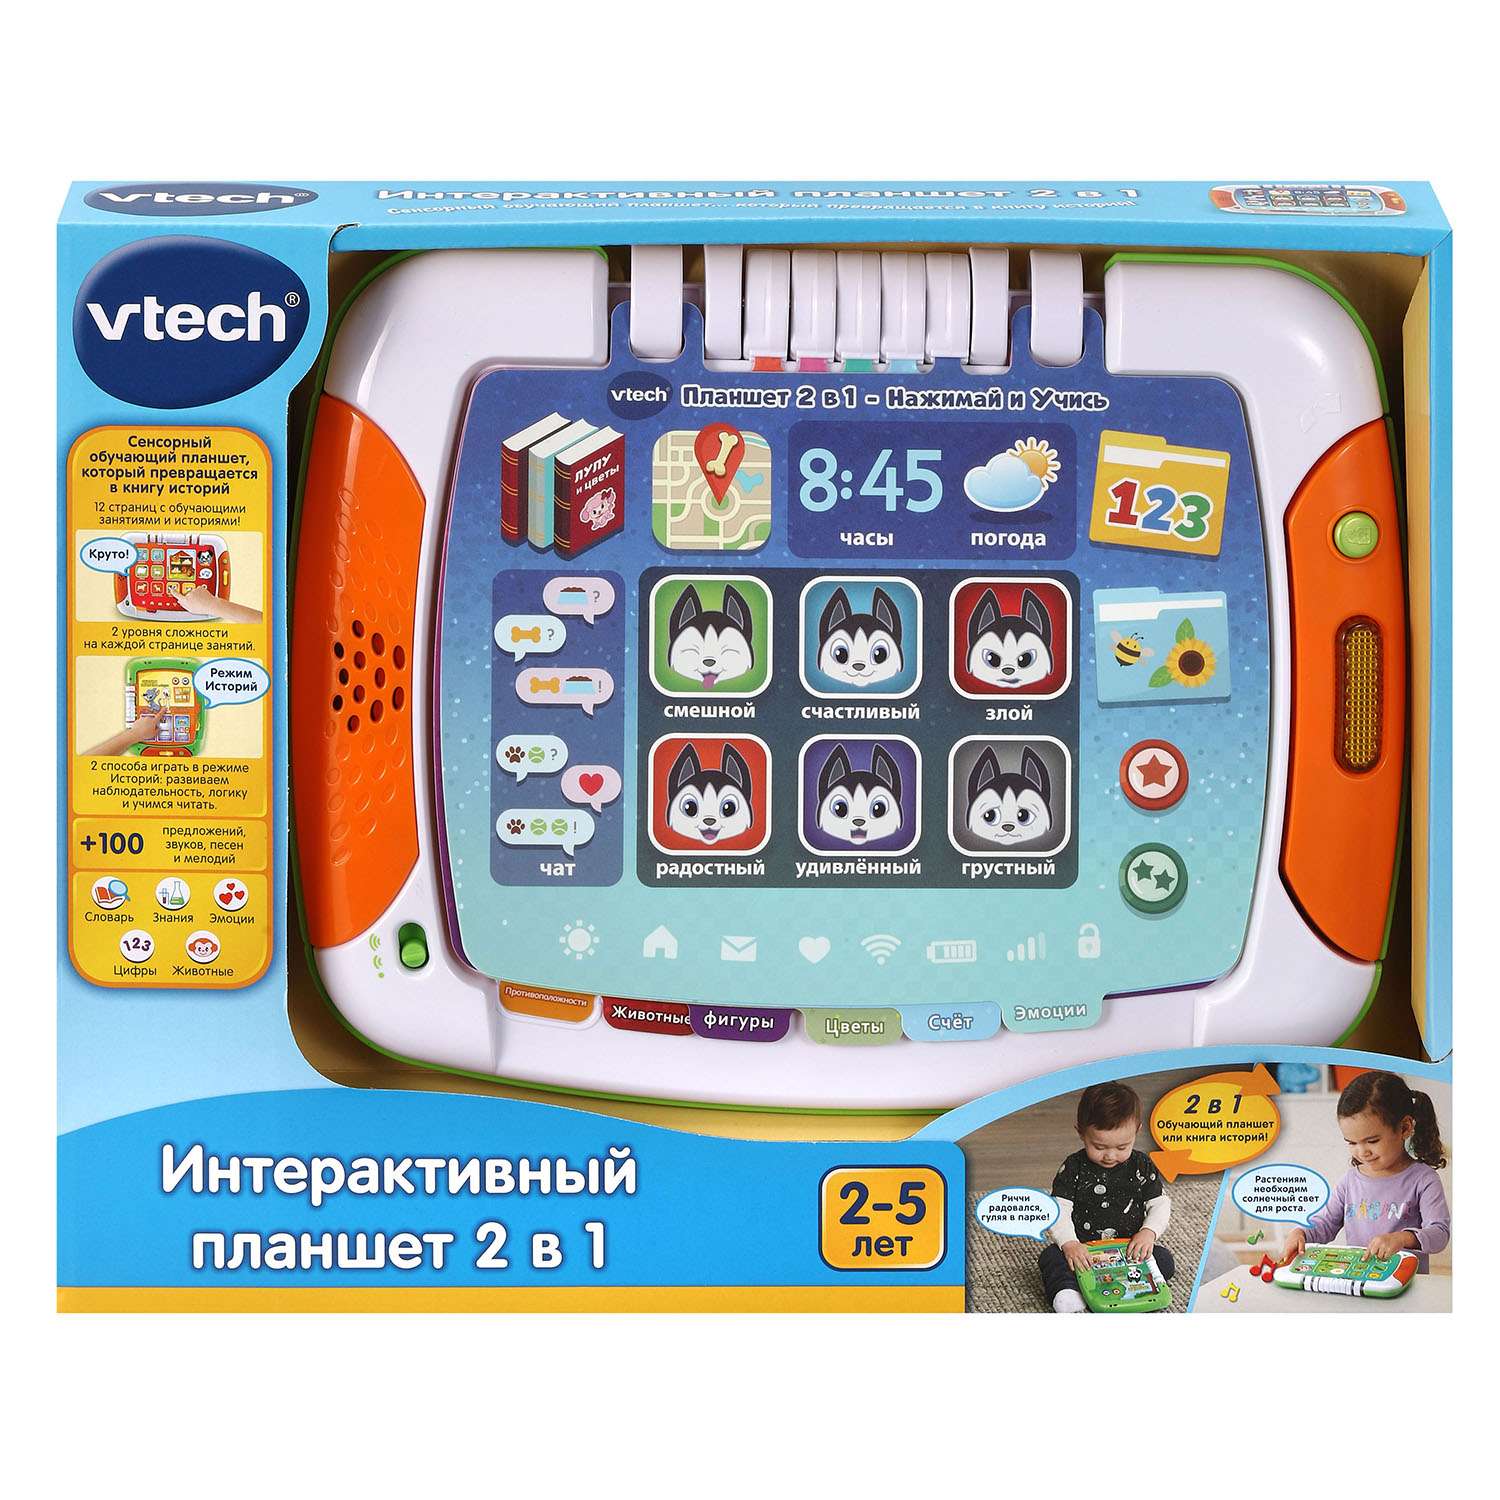 Игрушка Vtech Интерактивный планшет 2в1 80-611226 - фото 2